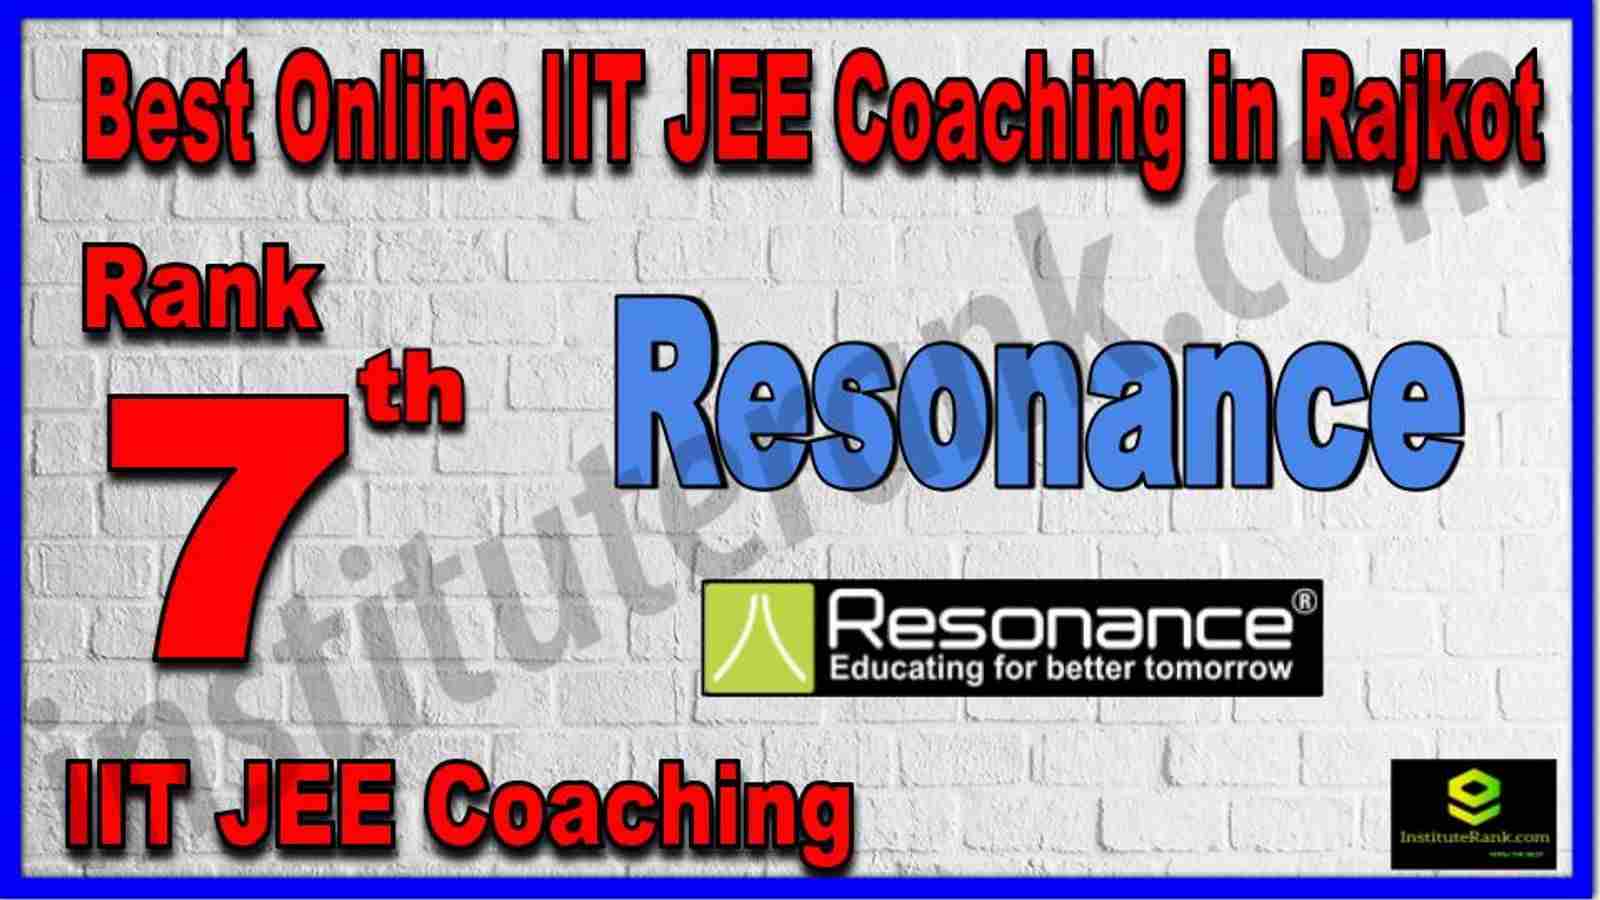 Rank 7th Best Online IIT JEE Coaching in Rajkot